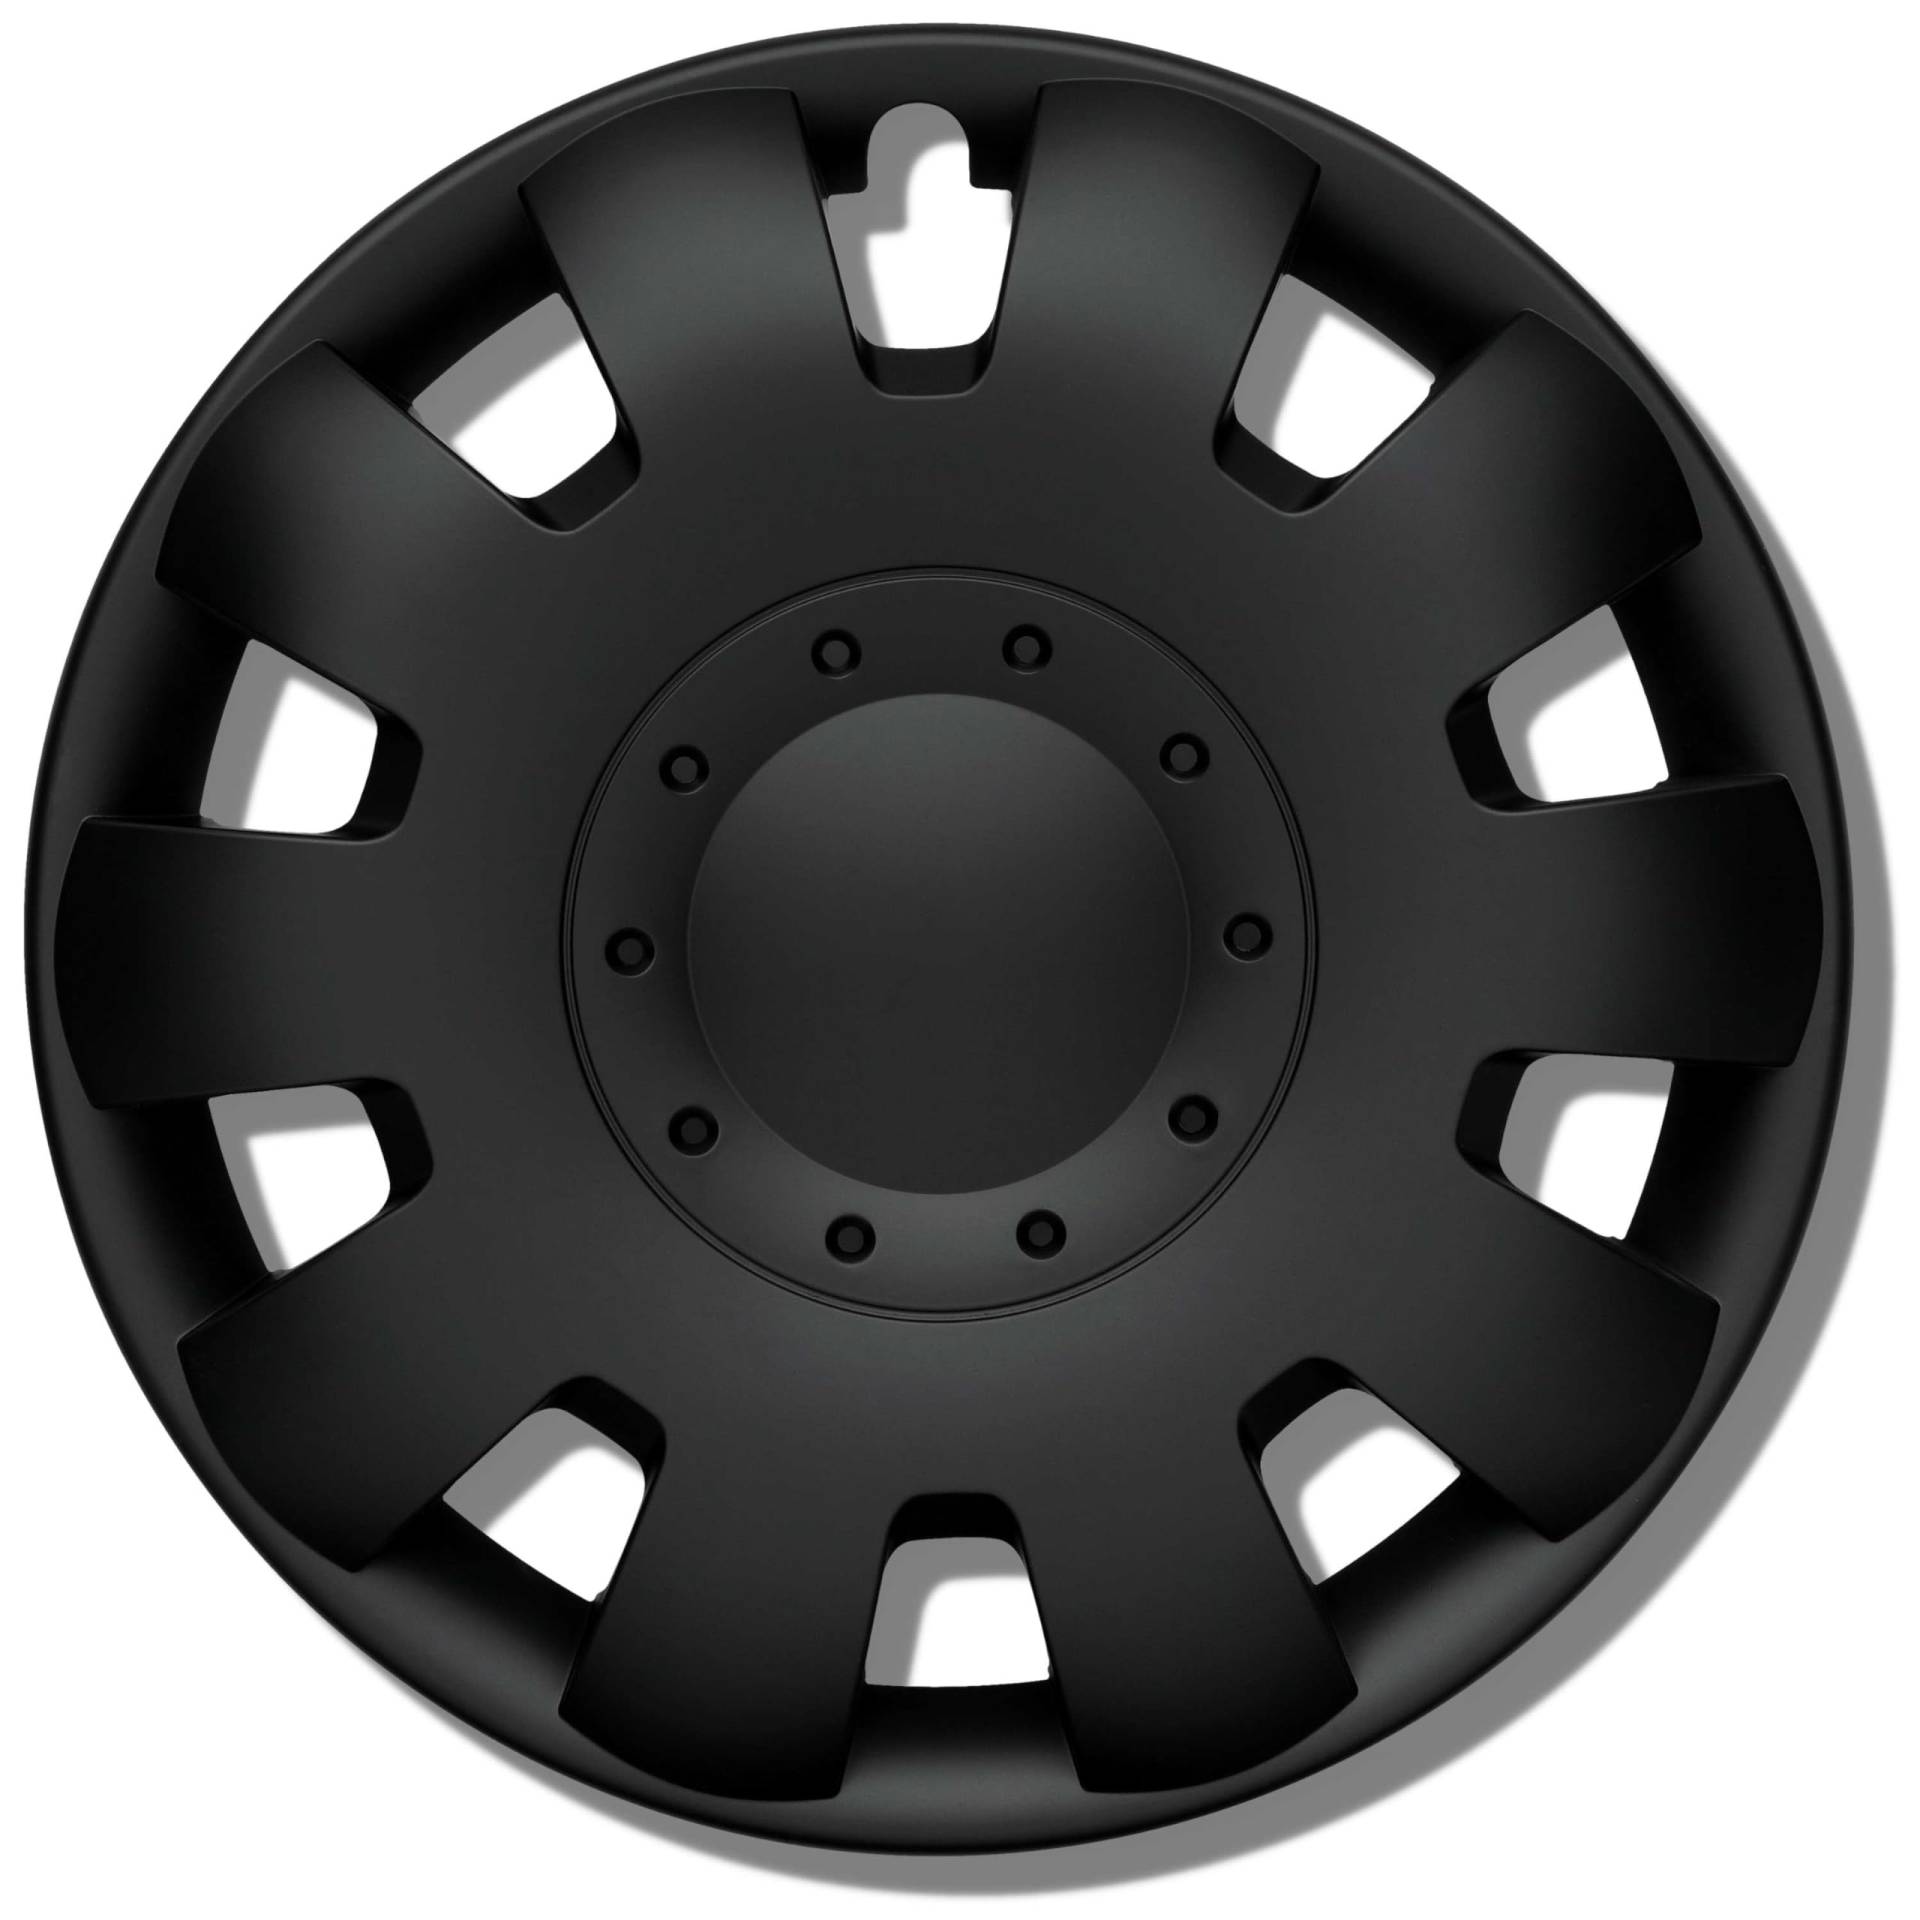 Radkappen 14 Zoll schwarz matt Erstausrüster Qualität aus robustem Kunststoff Neptun 4 Stück Radzierblenden für Stahlräder - Radblenden 4er Set für Stahlfelgen - Europäische Produktion von Kuglo